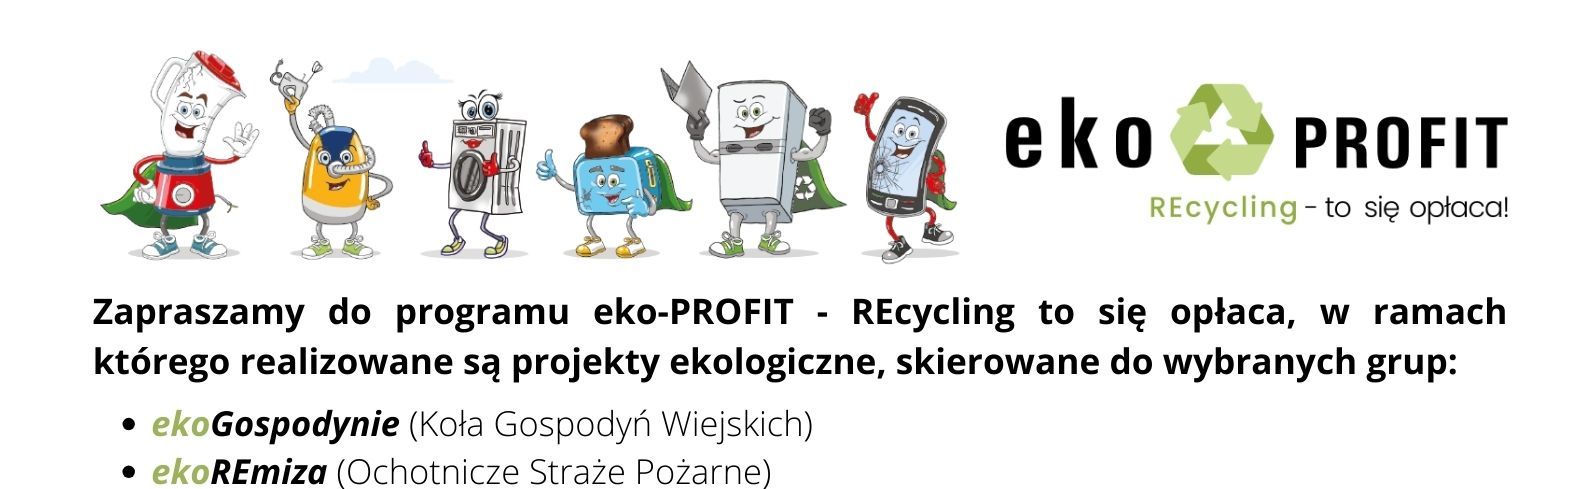 Program eko-Profit – Recycling to się opłaca!